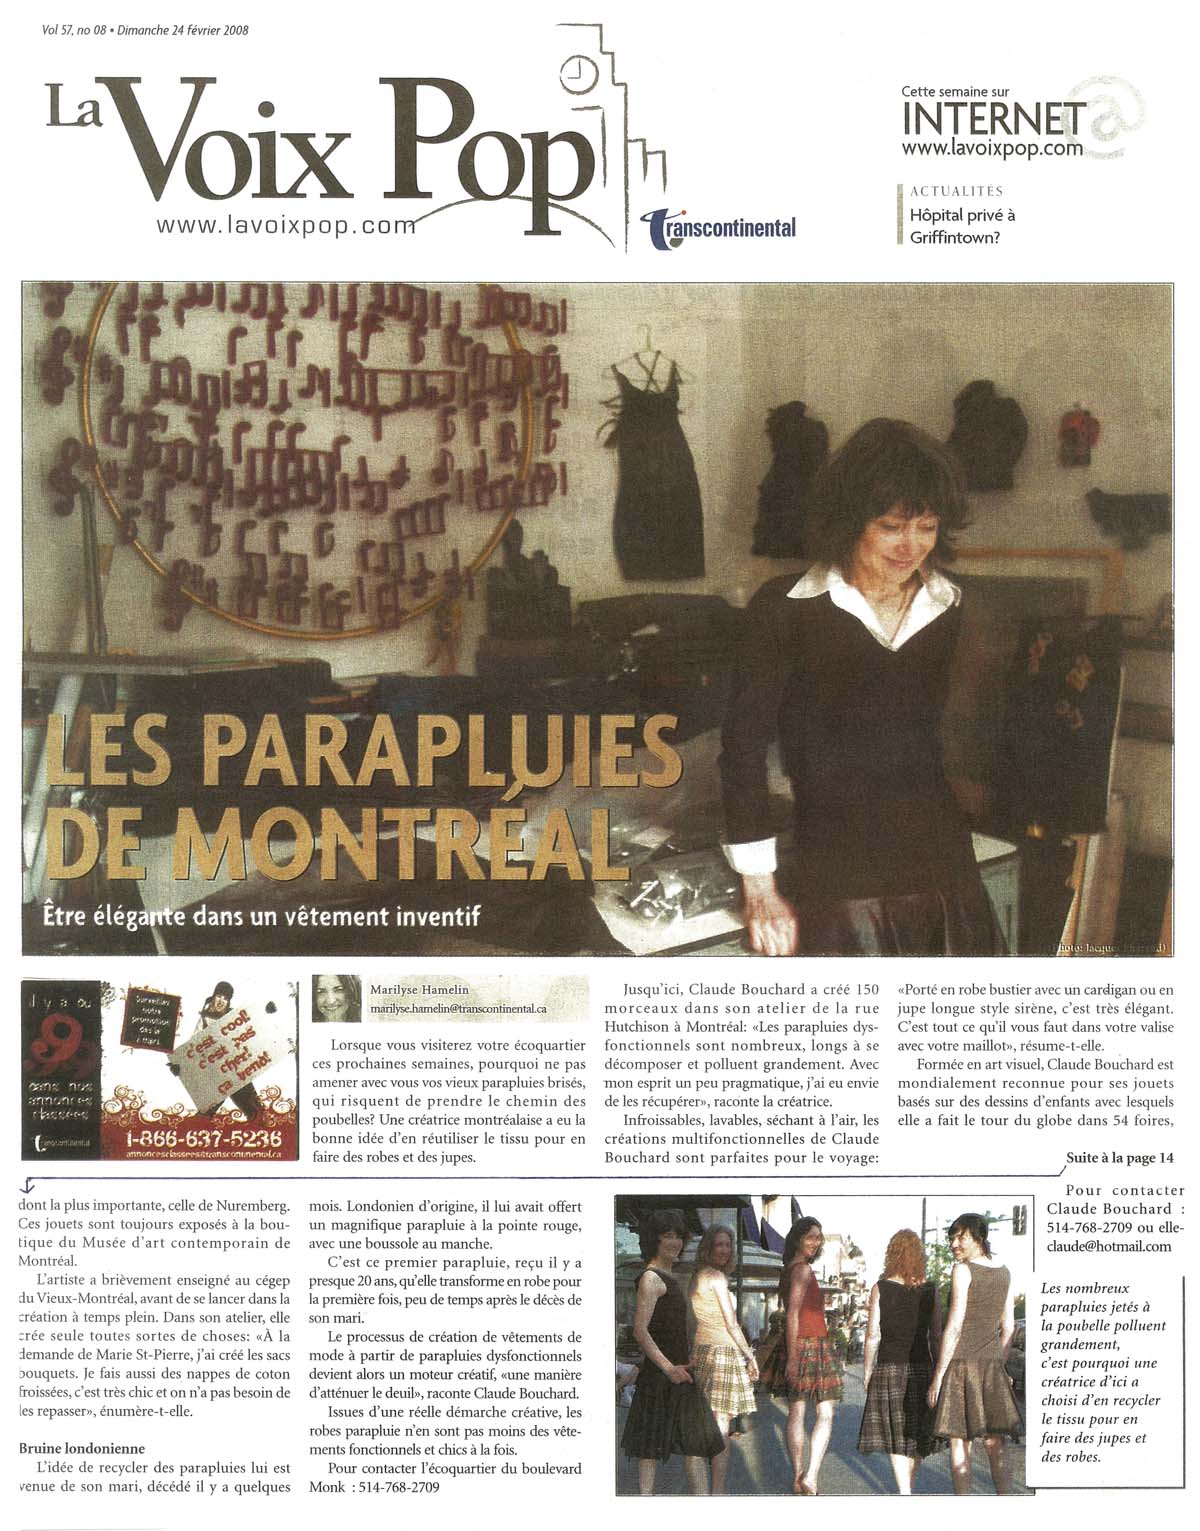 2008 La Voix POP. « Les parapluies de Montréal », Marylise Hamelin